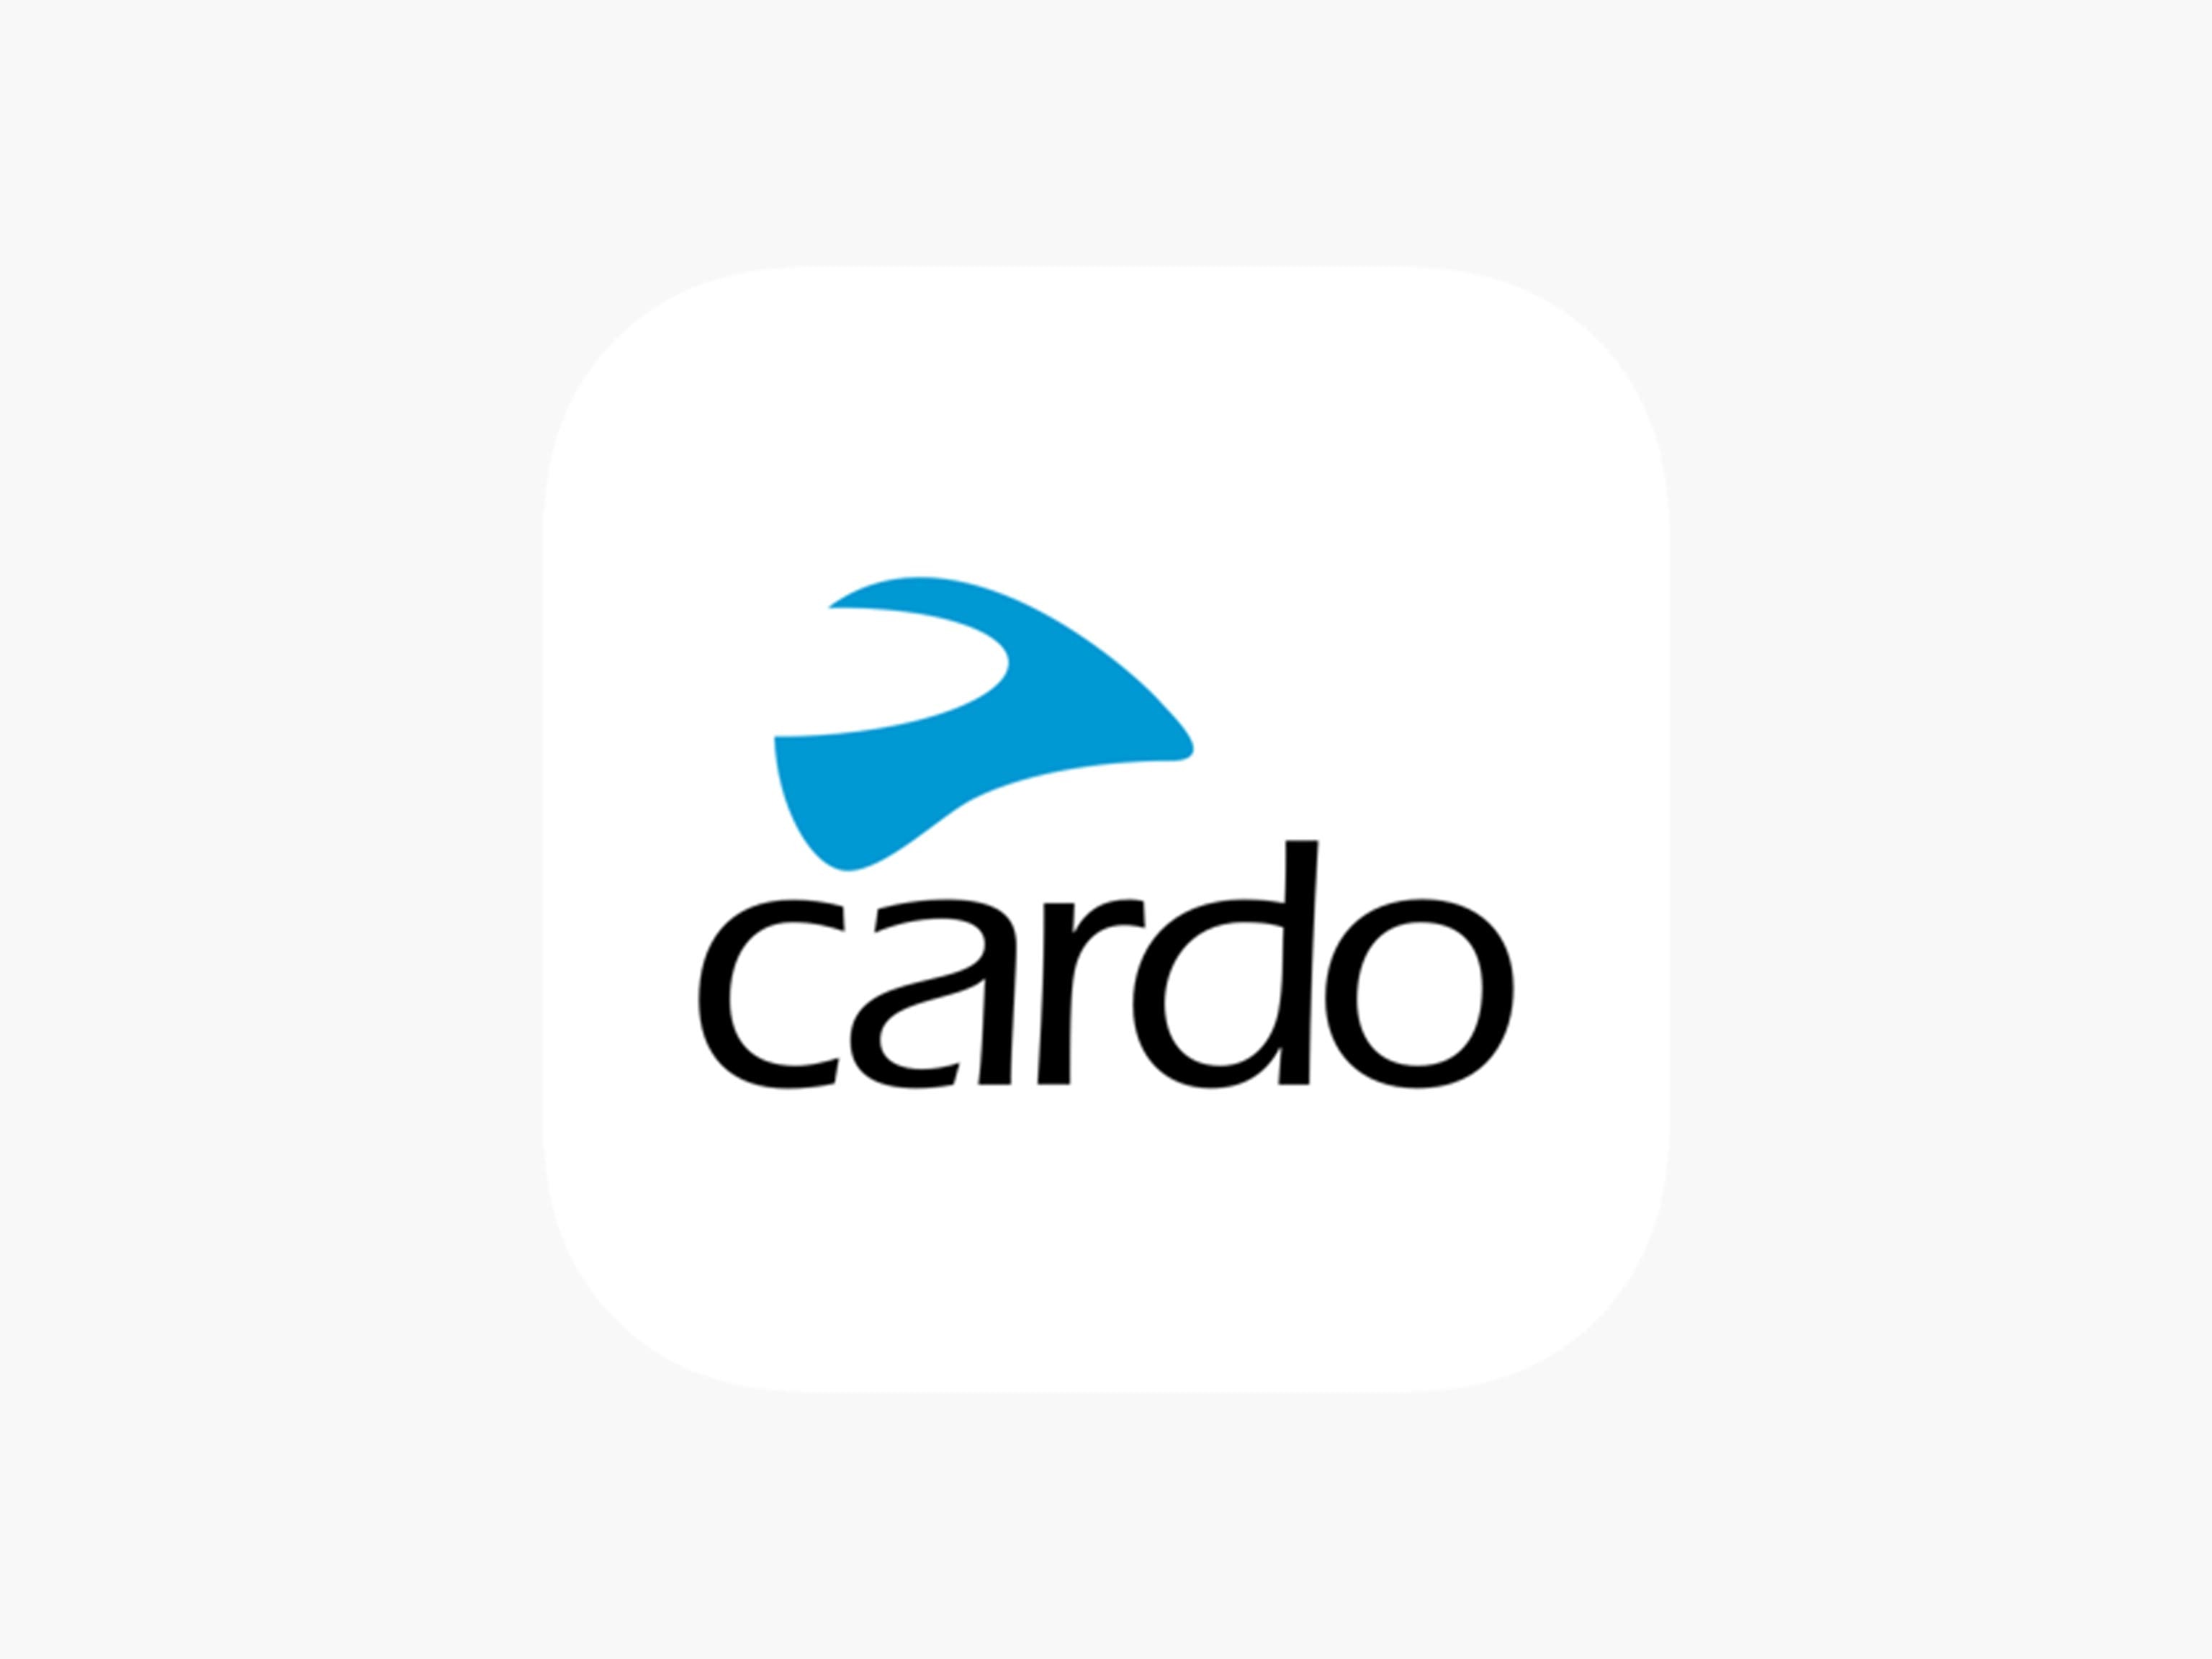 The Cardo app logo